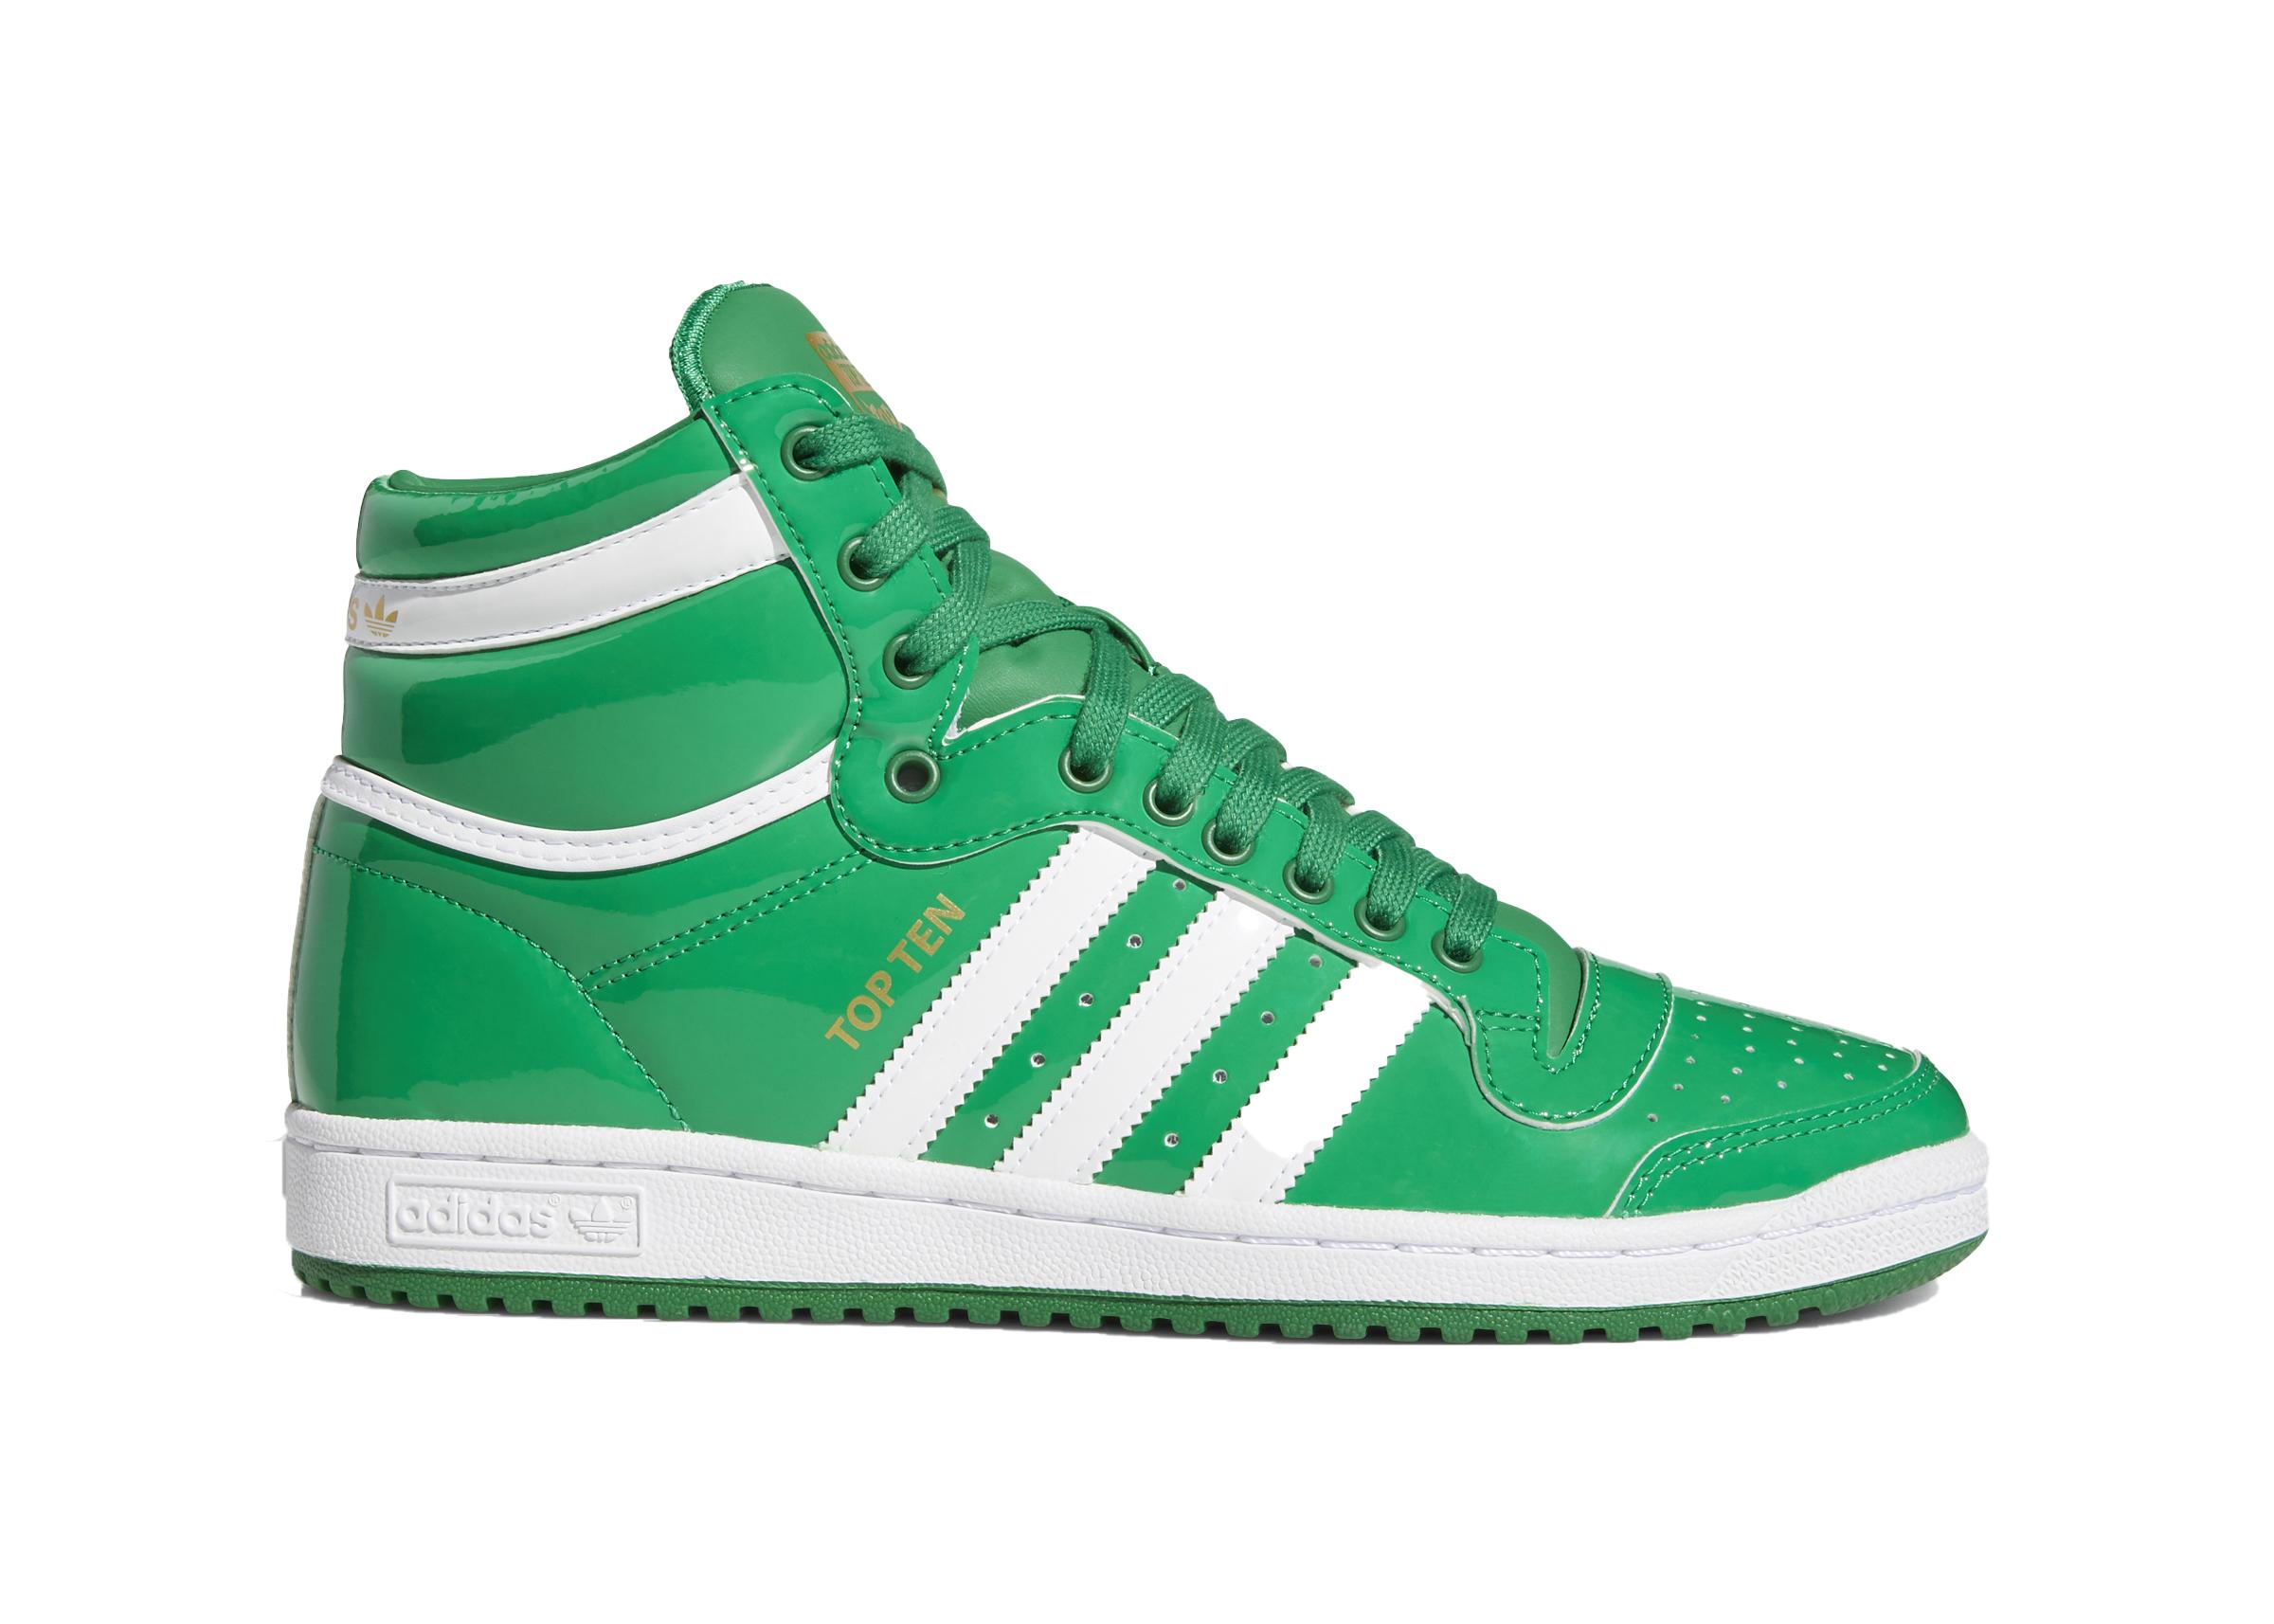 adidas Lace Top Ten Hi Shoes in Green/Cloud White/Gold Metallic (Green ...